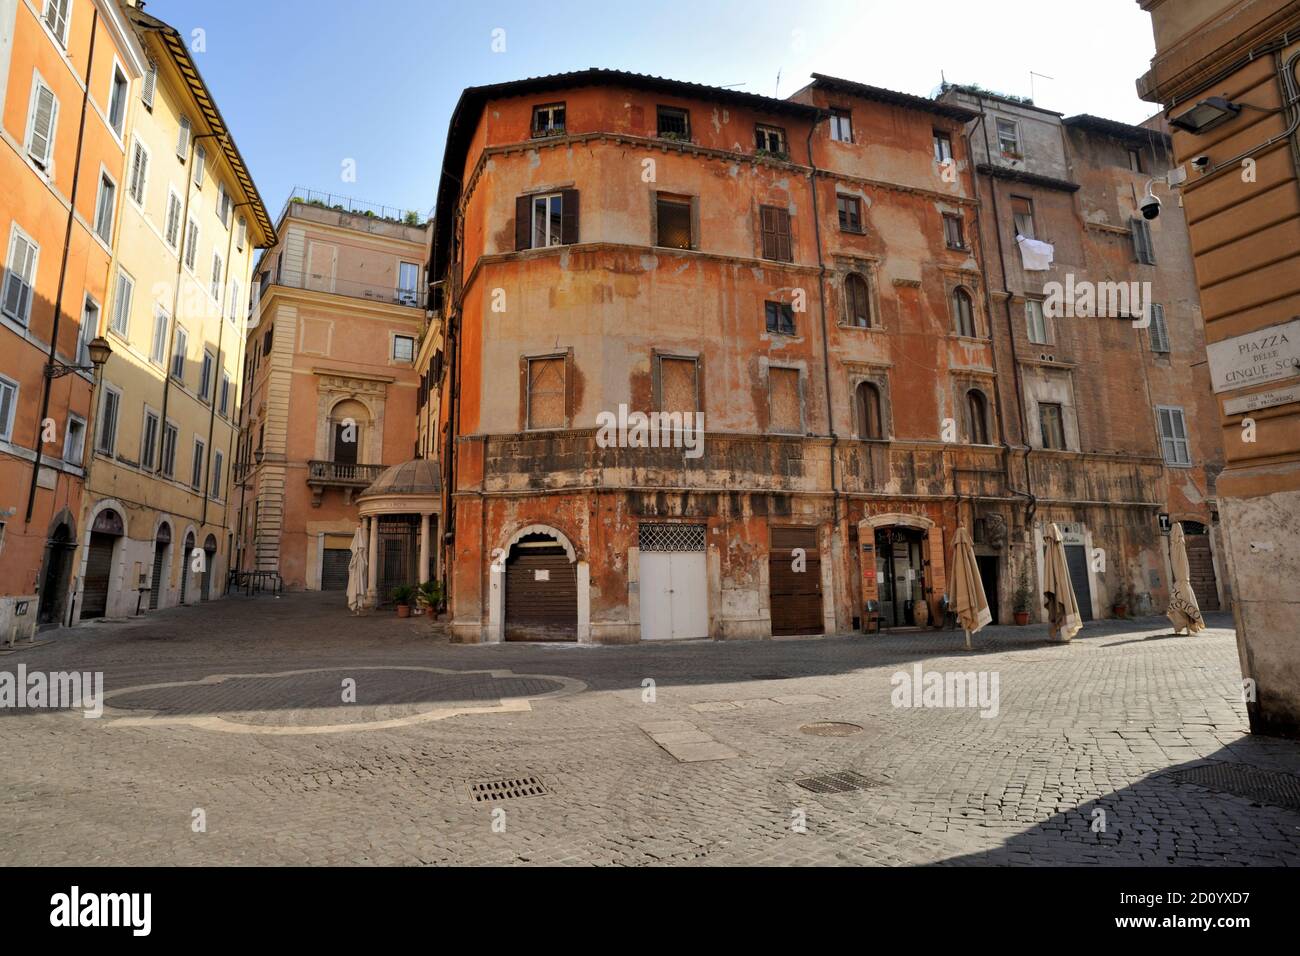 Italie, Rome, Ghetto juif, via del Portico d'Ottavia, maison de Lorenzo Manilio (15e siècle après JC) Banque D'Images